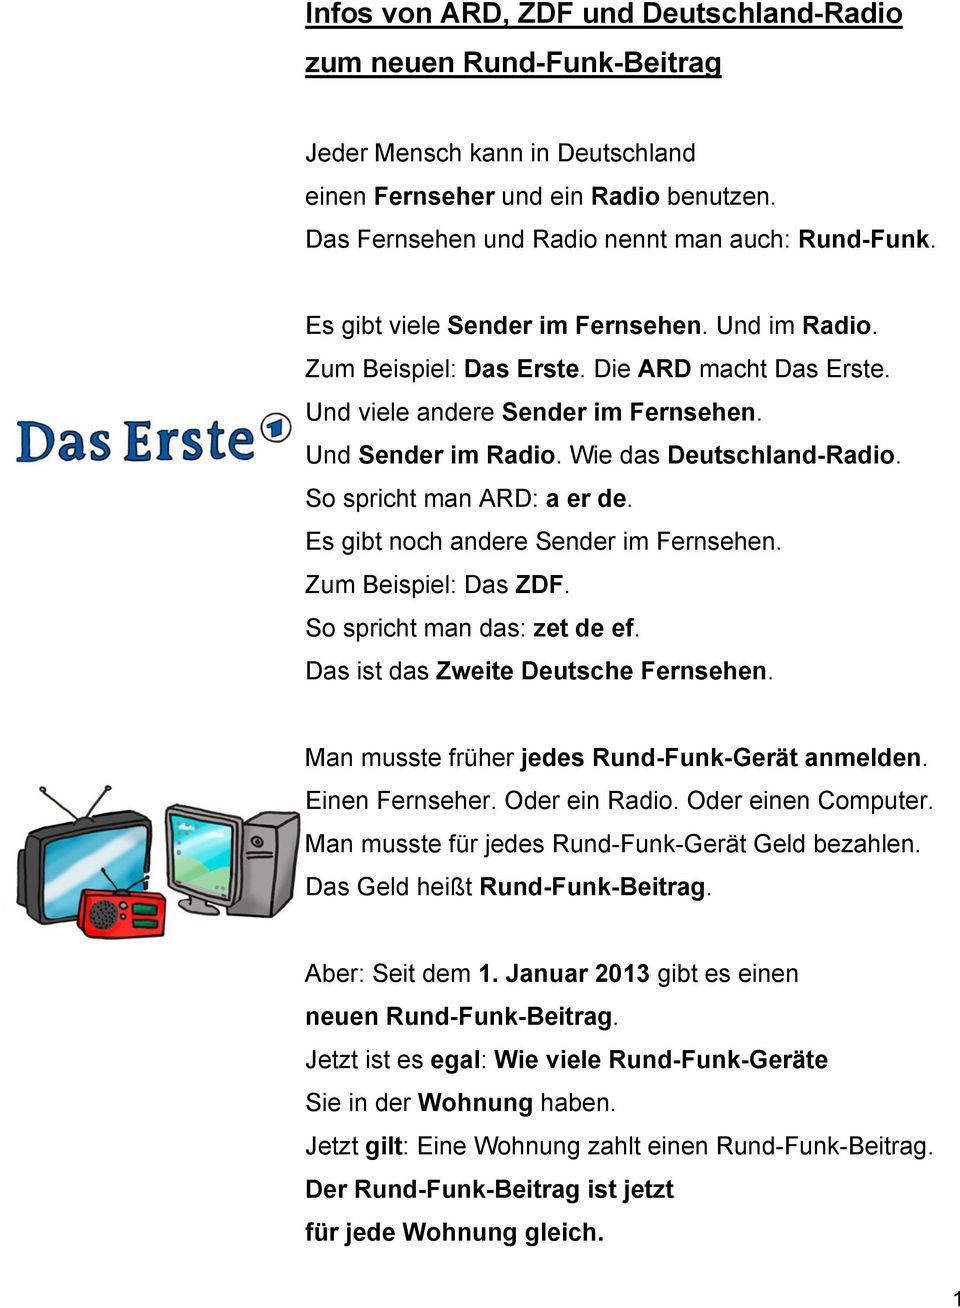 So spricht man ARD: a er de. Es gibt noch andere Sender im Fernsehen. Zum Beispiel: Das ZDF. So spricht man das: zet de ef. Das ist das Zweite Deutsche Fernsehen.